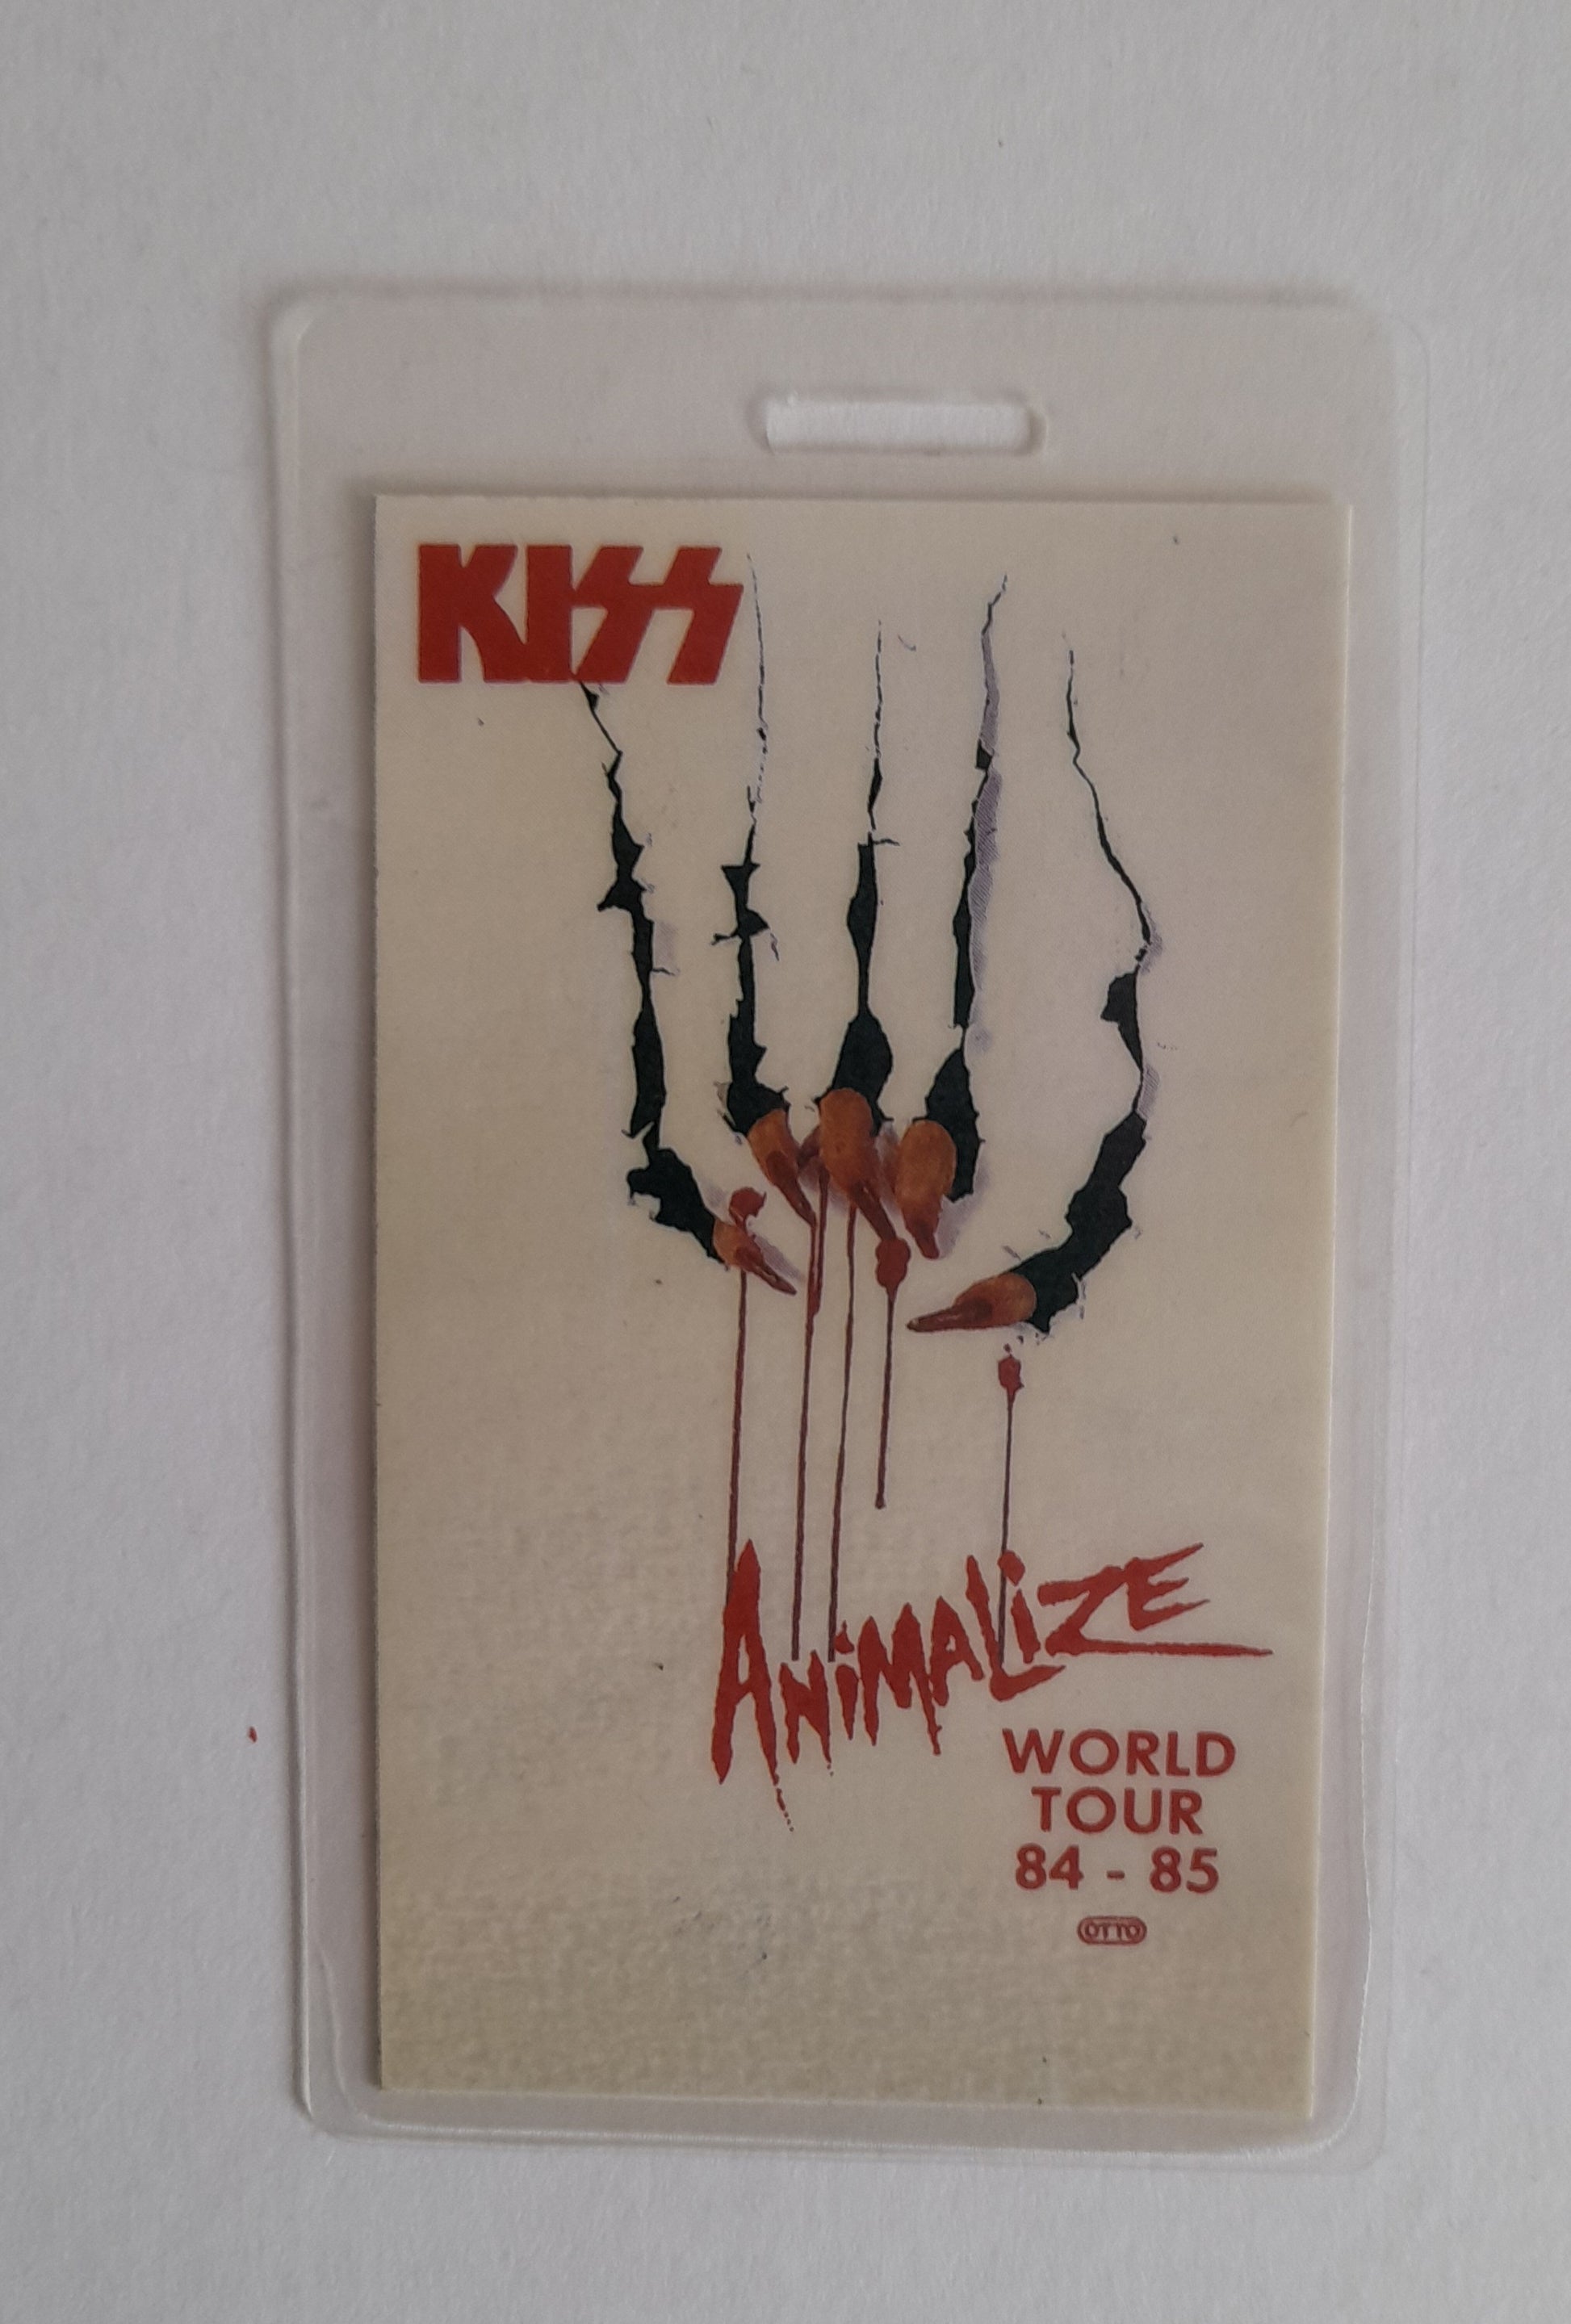 KISS - Animalize World Tour 1984/85 Backstage Pass